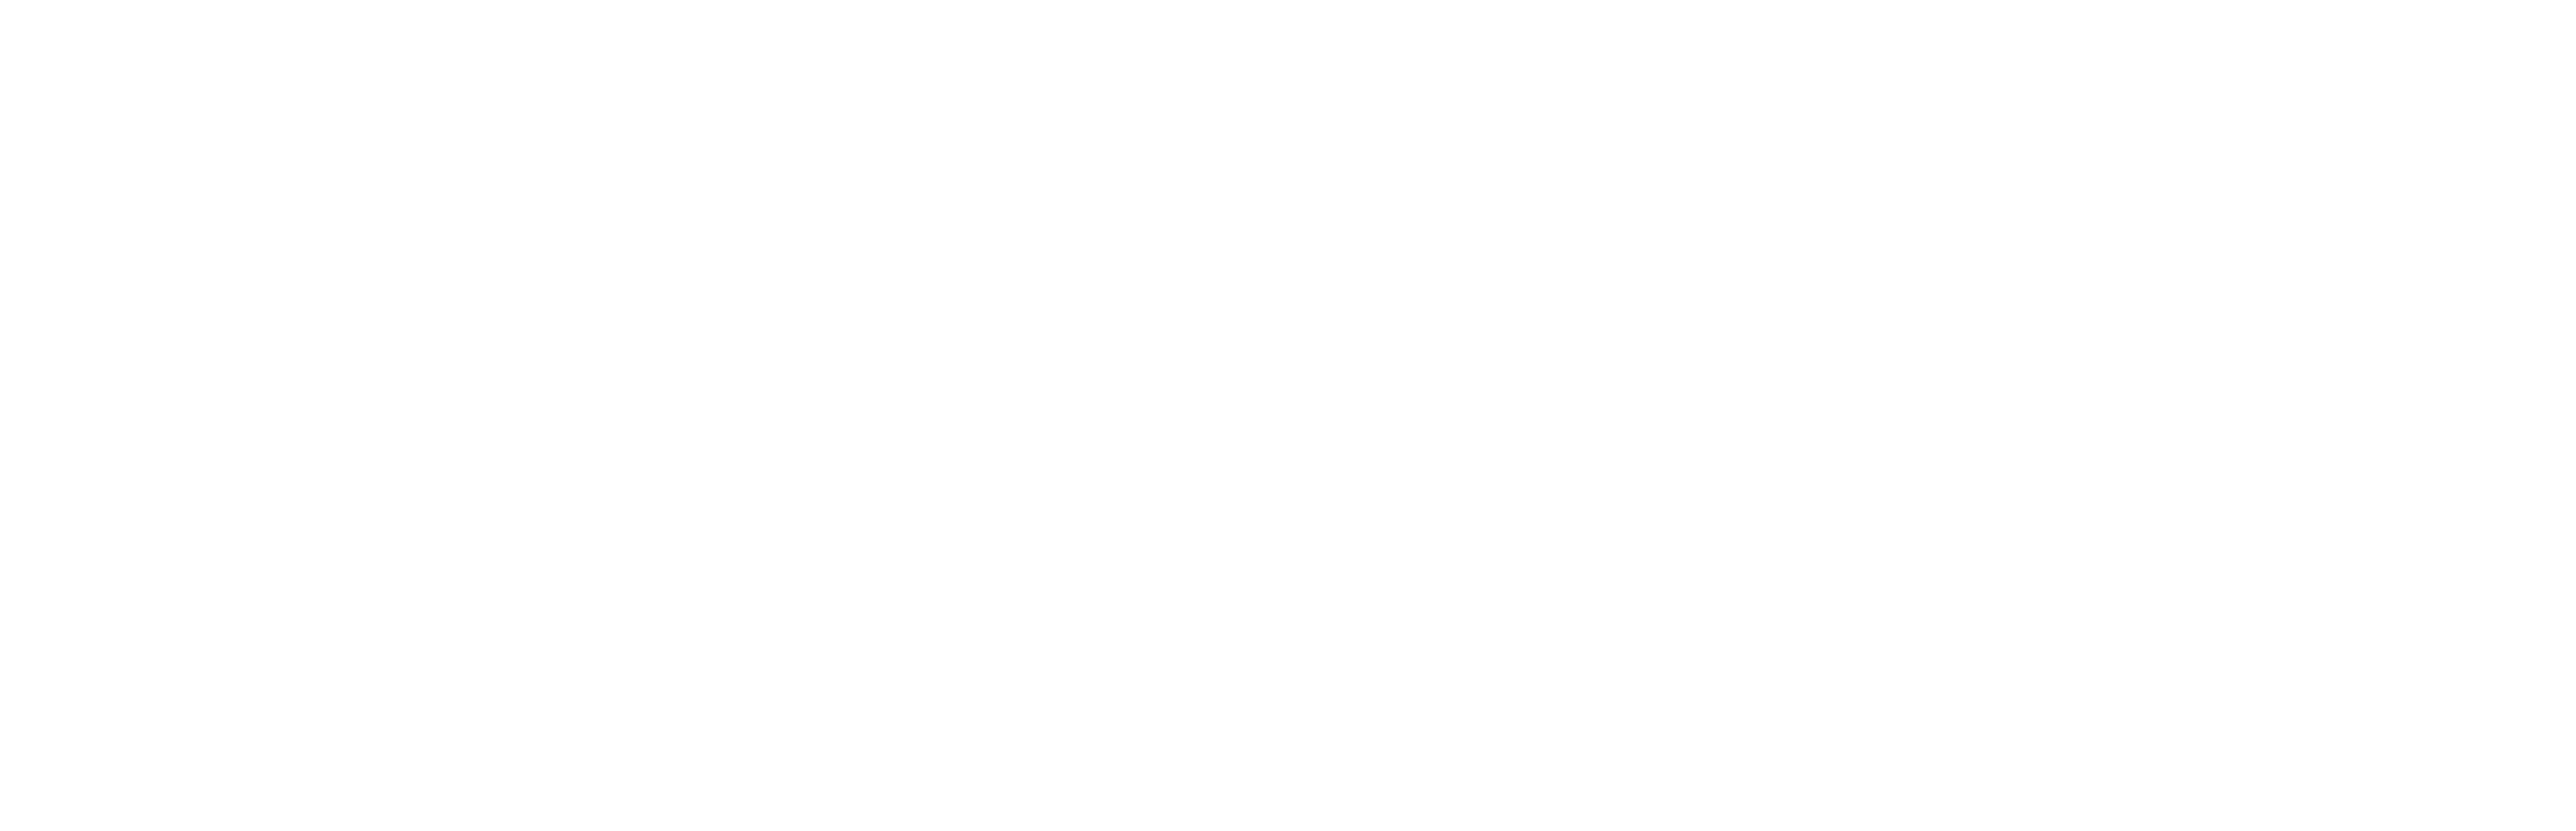 Sara Kari Music - Logo